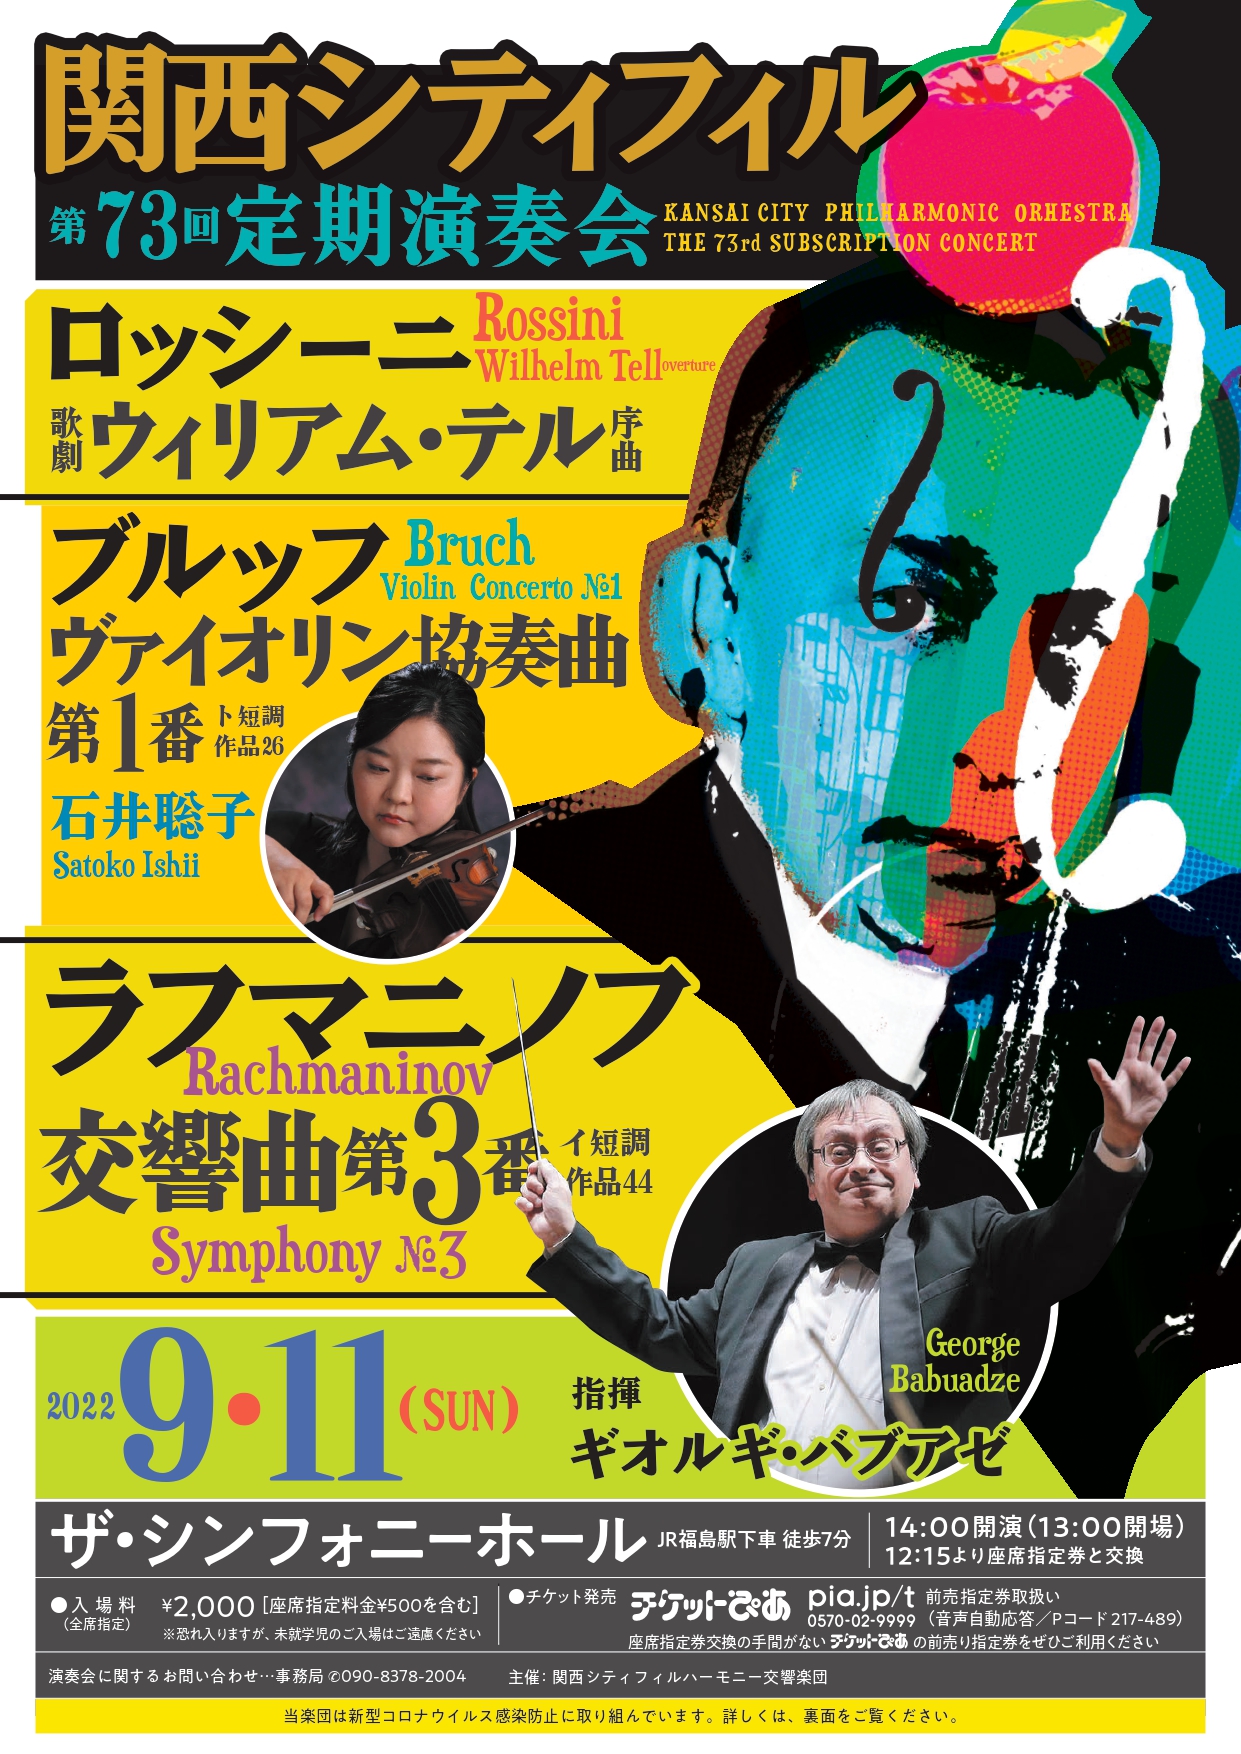 関西シティフィルハーモニー交響楽団第73回定期演奏会のフライヤー画像